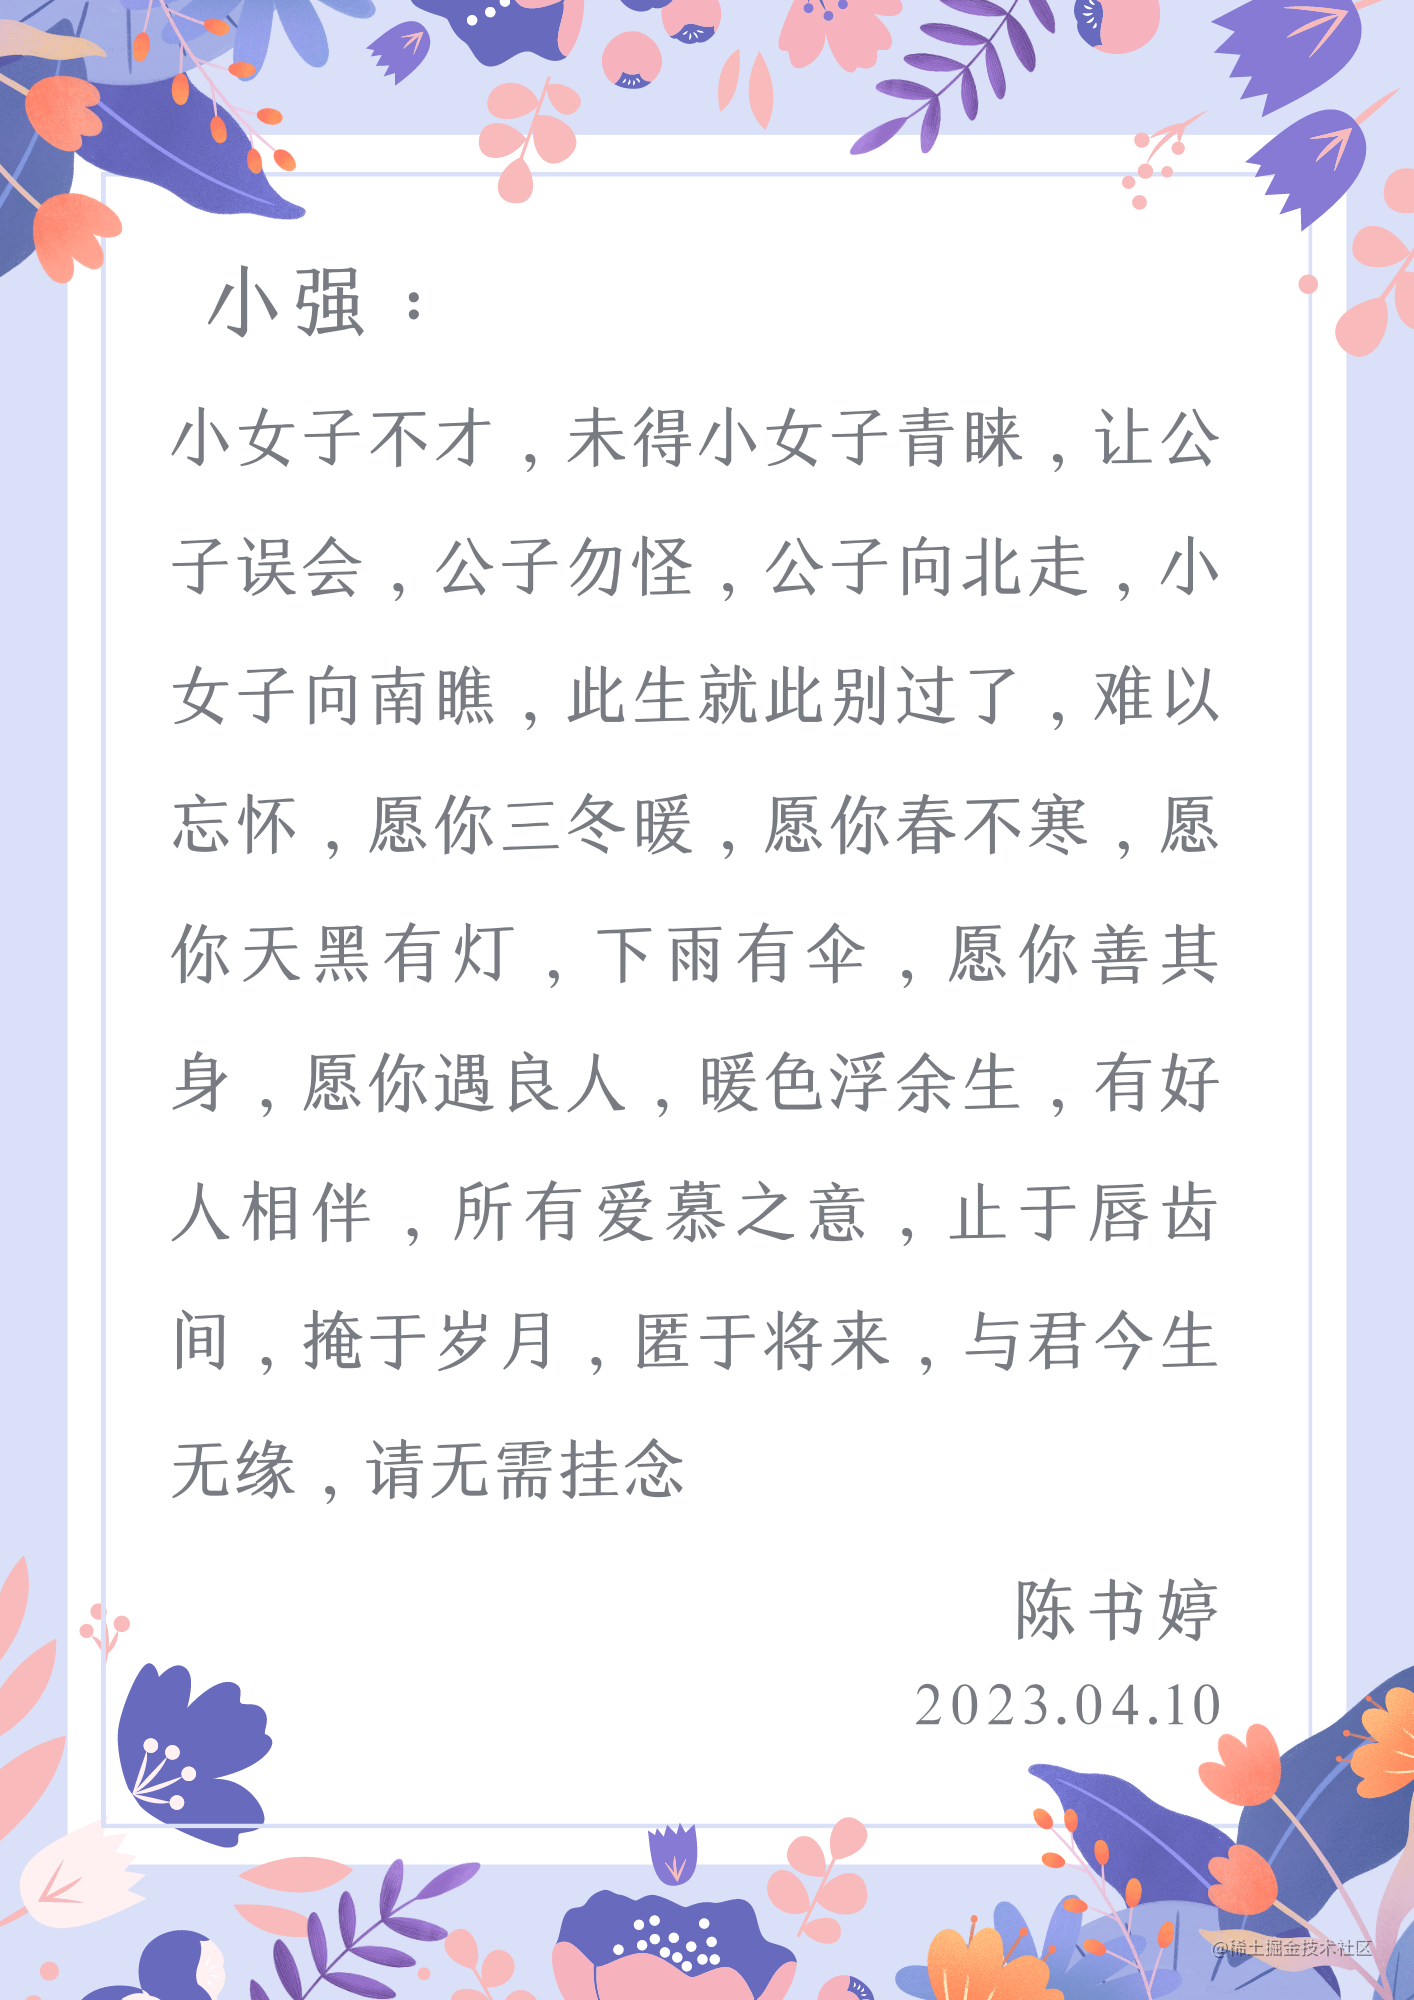 黄橙色手绘玫瑰花束母亲节信纸手绘母亲节个人感谢中文信纸 (1).png